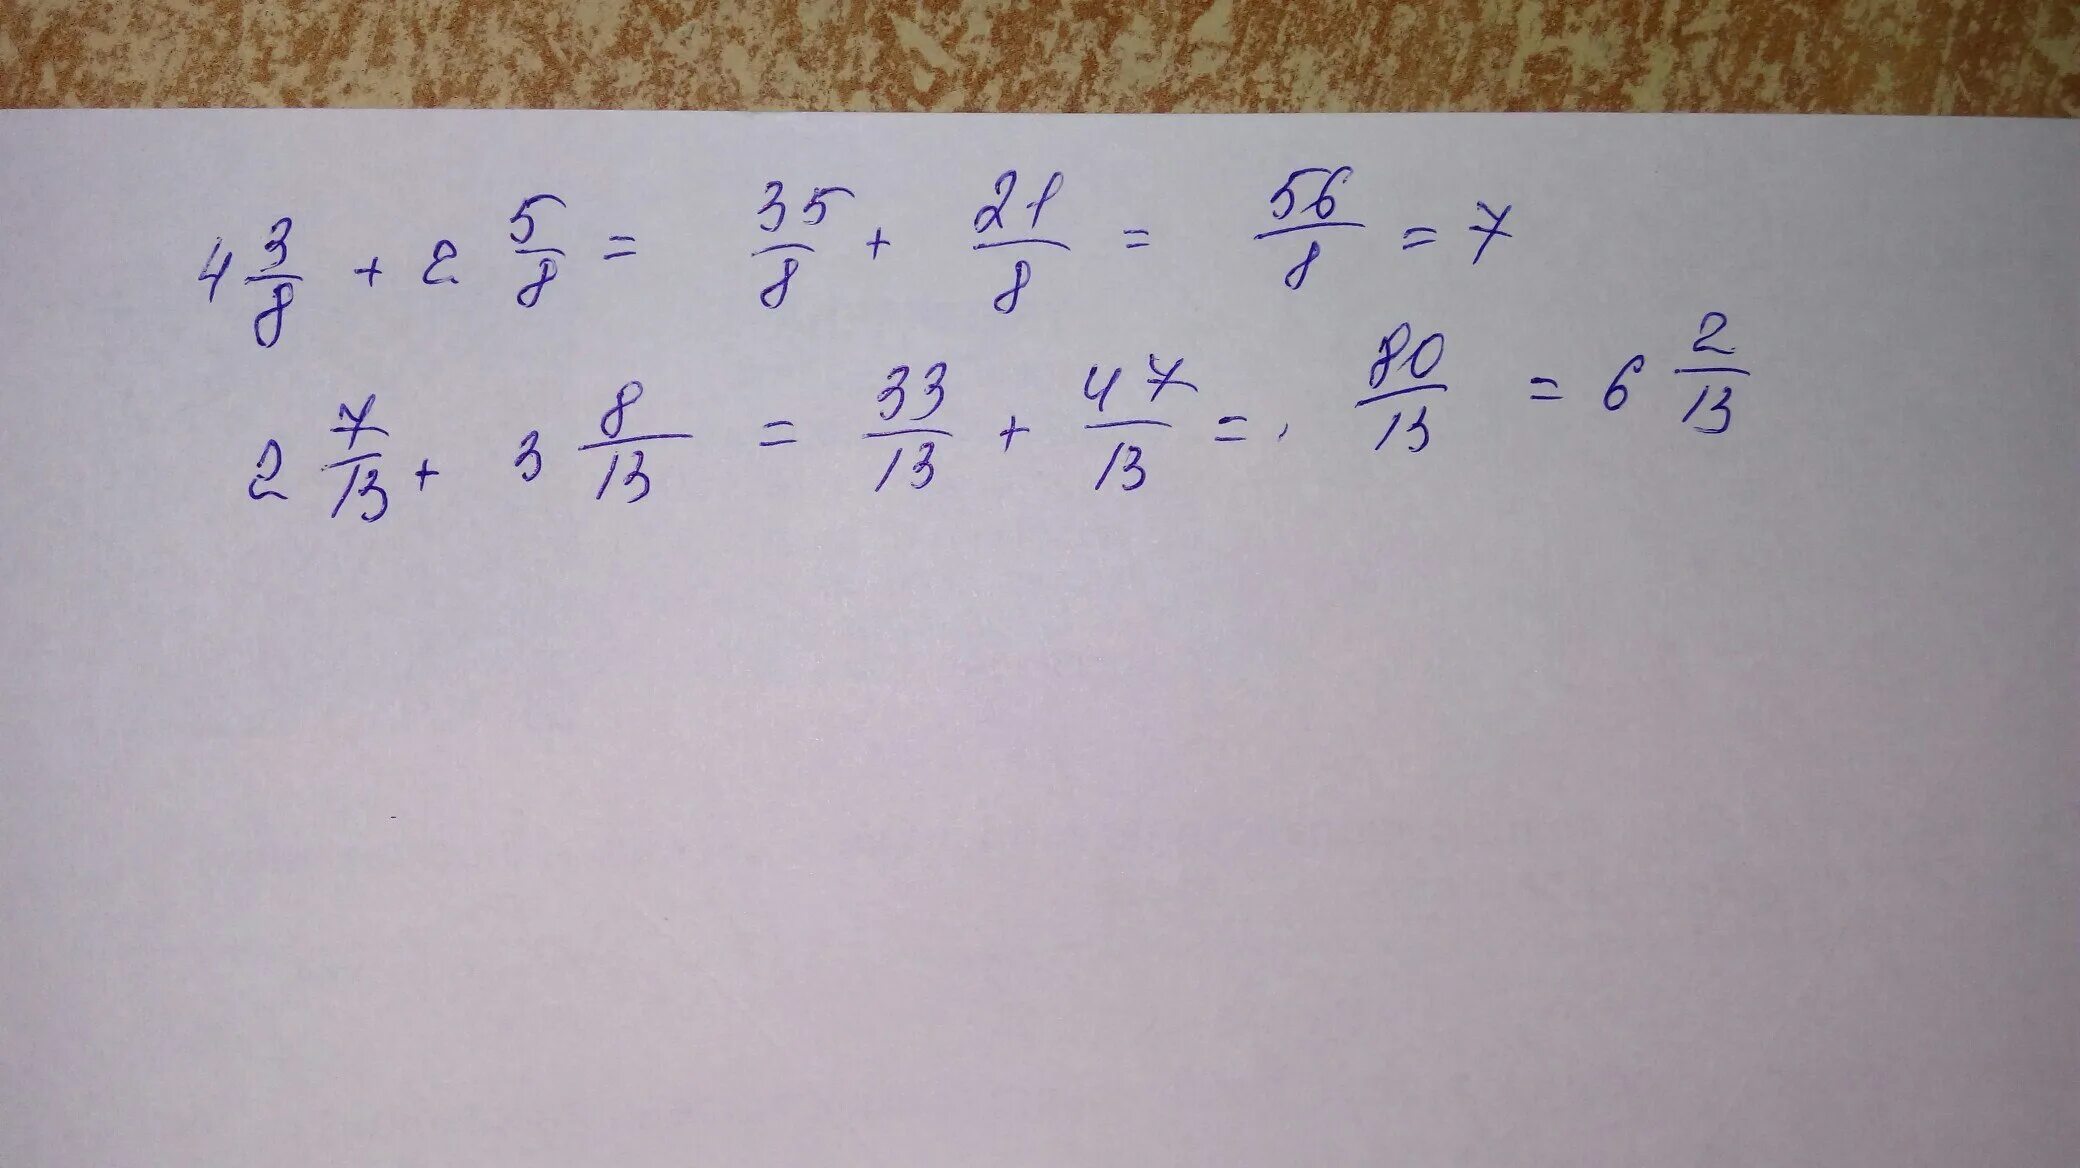 Решить дроби 2 3 2. Дробь 2√5 к √5-√3. Дробь 3 и 8 * 2. Дробь 5/3 - 8/2. Дробь 5 плюс 3 2 5.